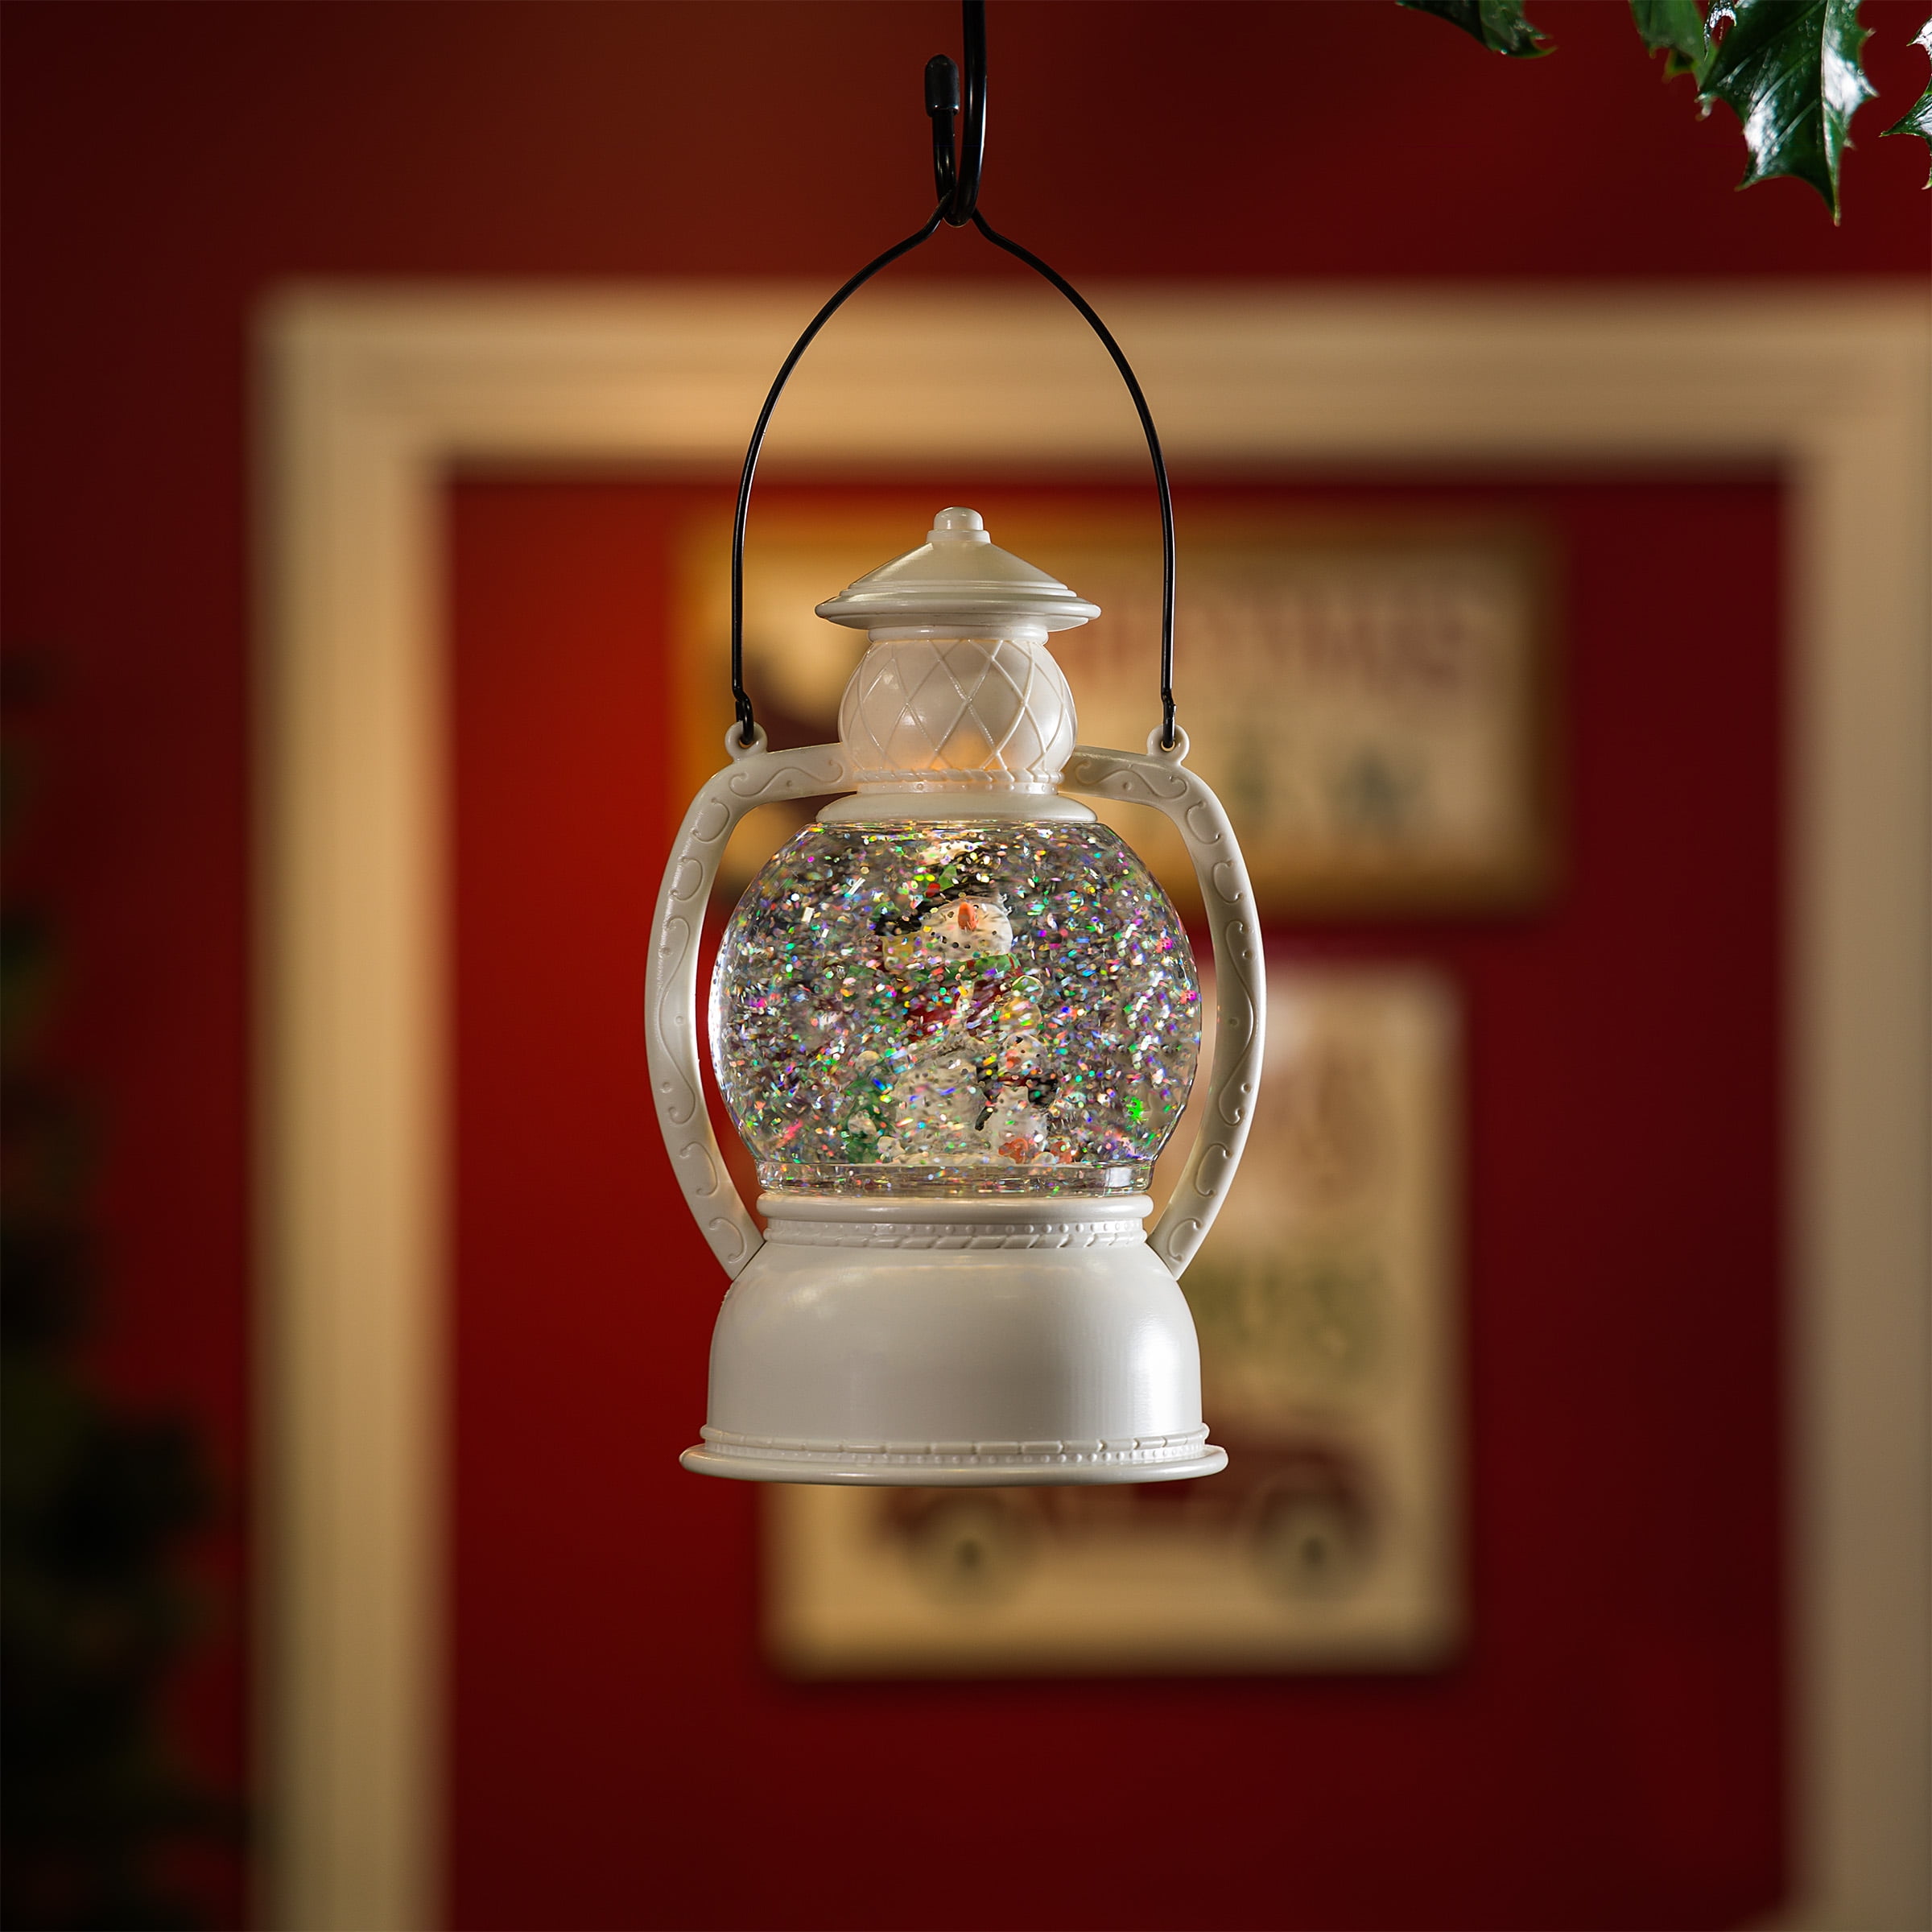 Picture of Alpine QVA124 White Christmas Snow Globe Lantern with Warm White LED Light